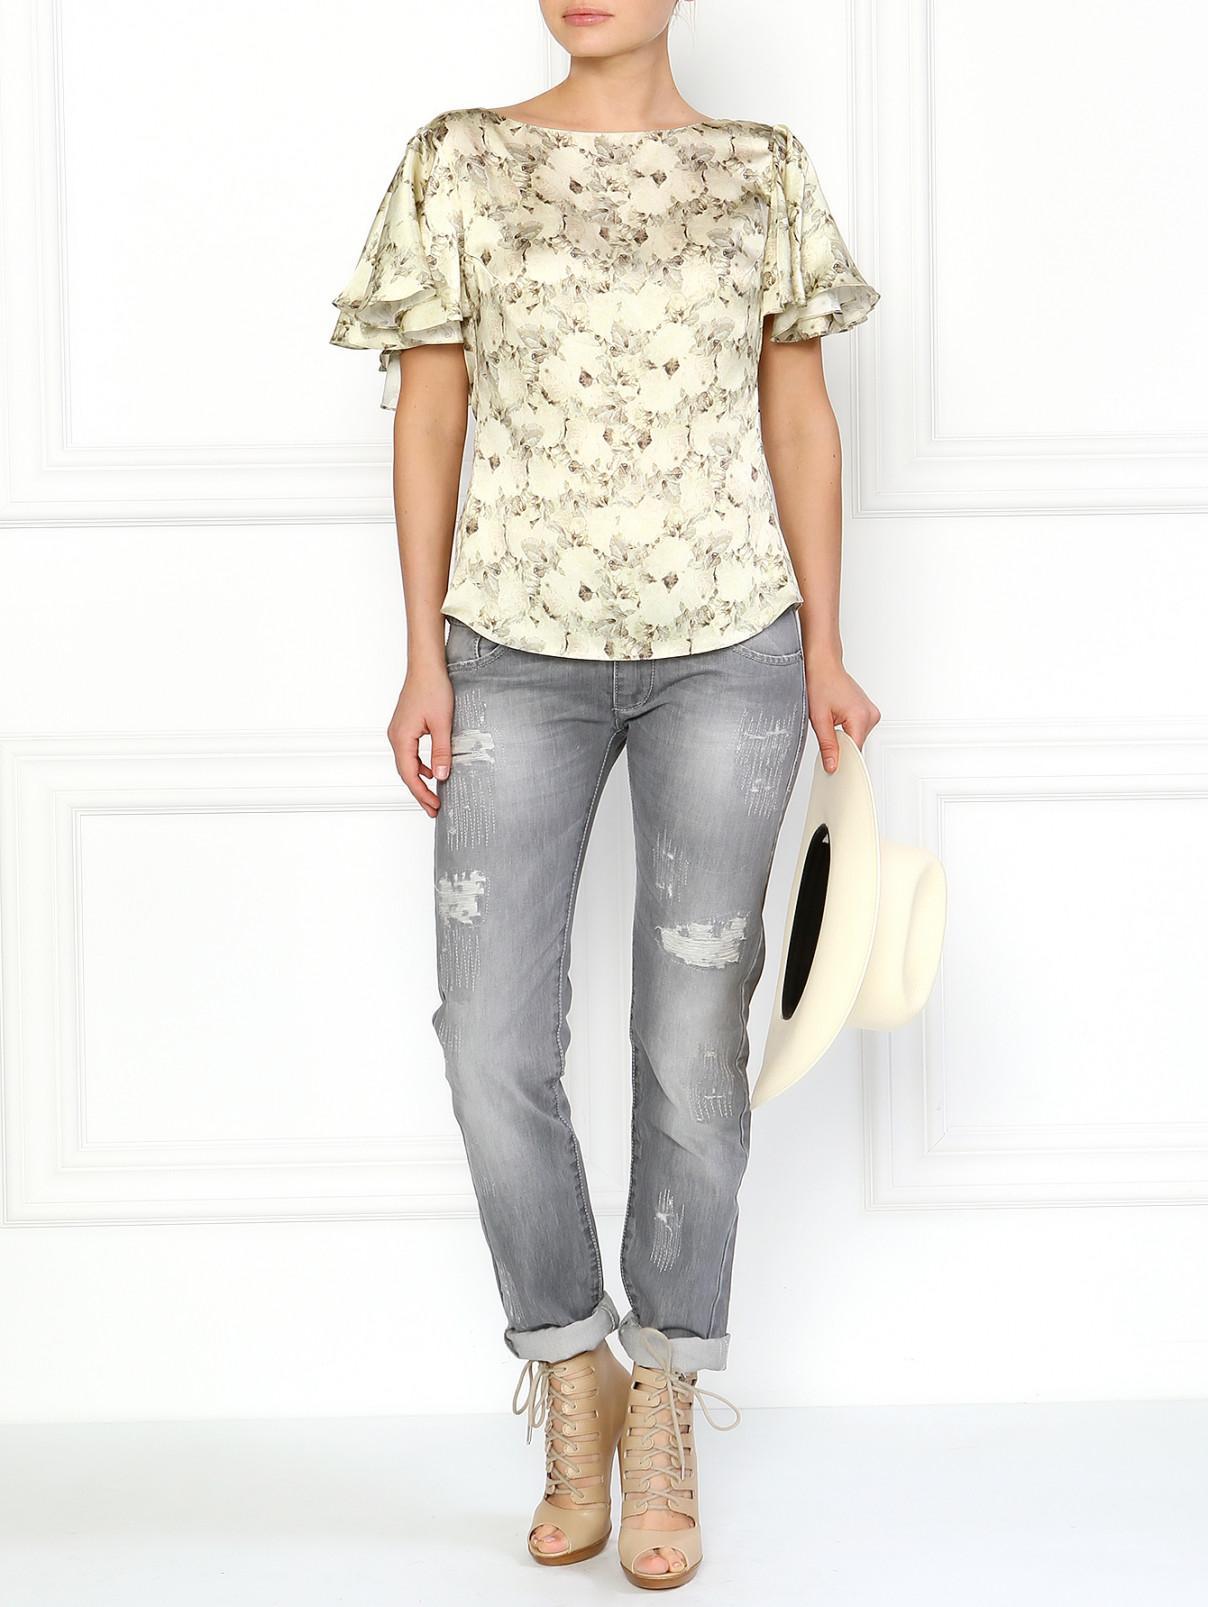 Шелковая блуза с цветочным принтом A La Russe  –  Модель Общий вид  – Цвет:  Узор